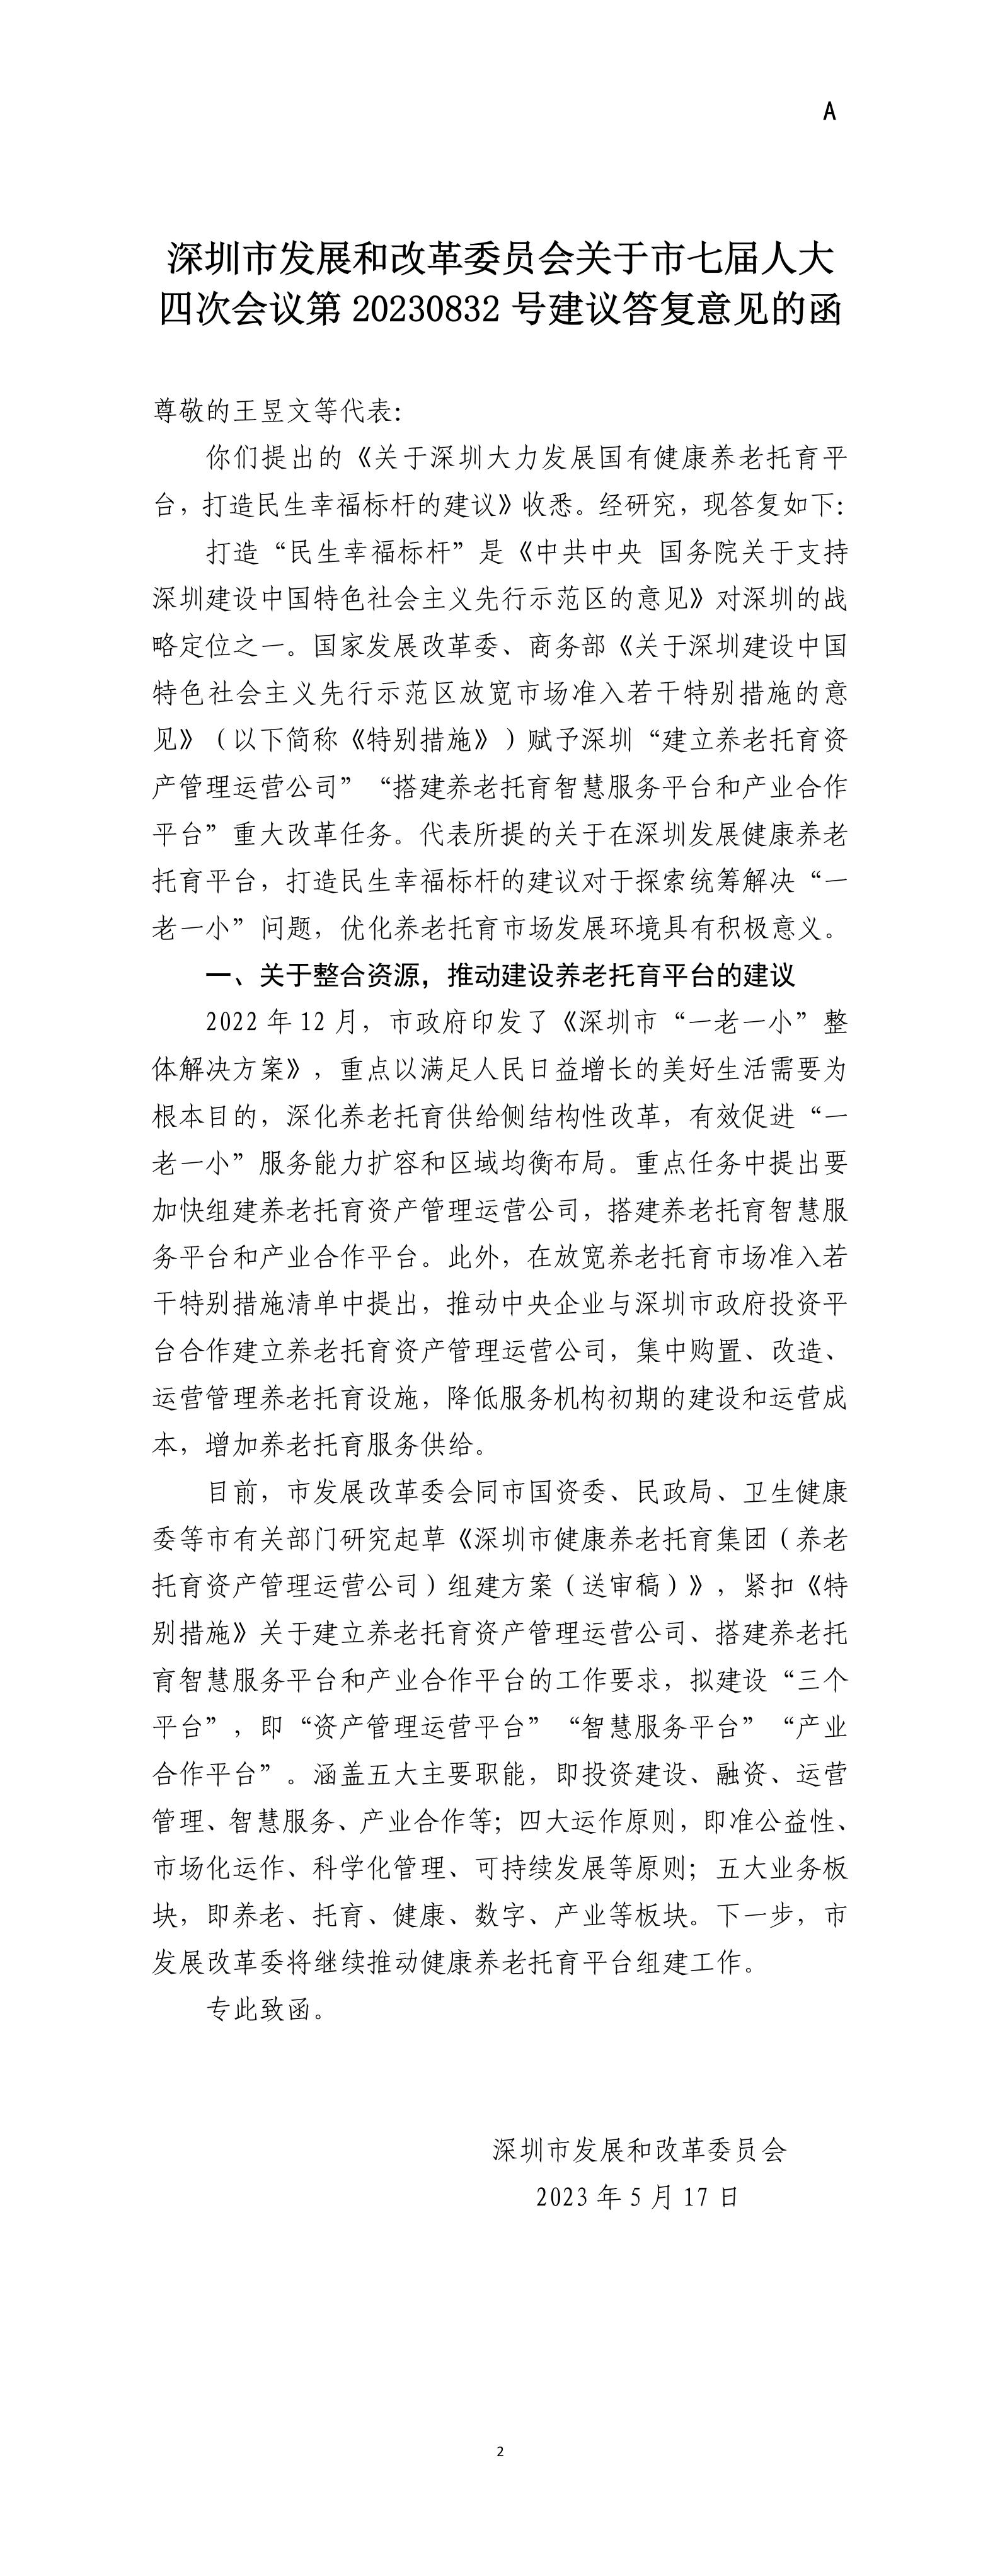 深圳市发展和改革委员会关于市七届人大四次会议第20230832号建议答复意见的函.jpg